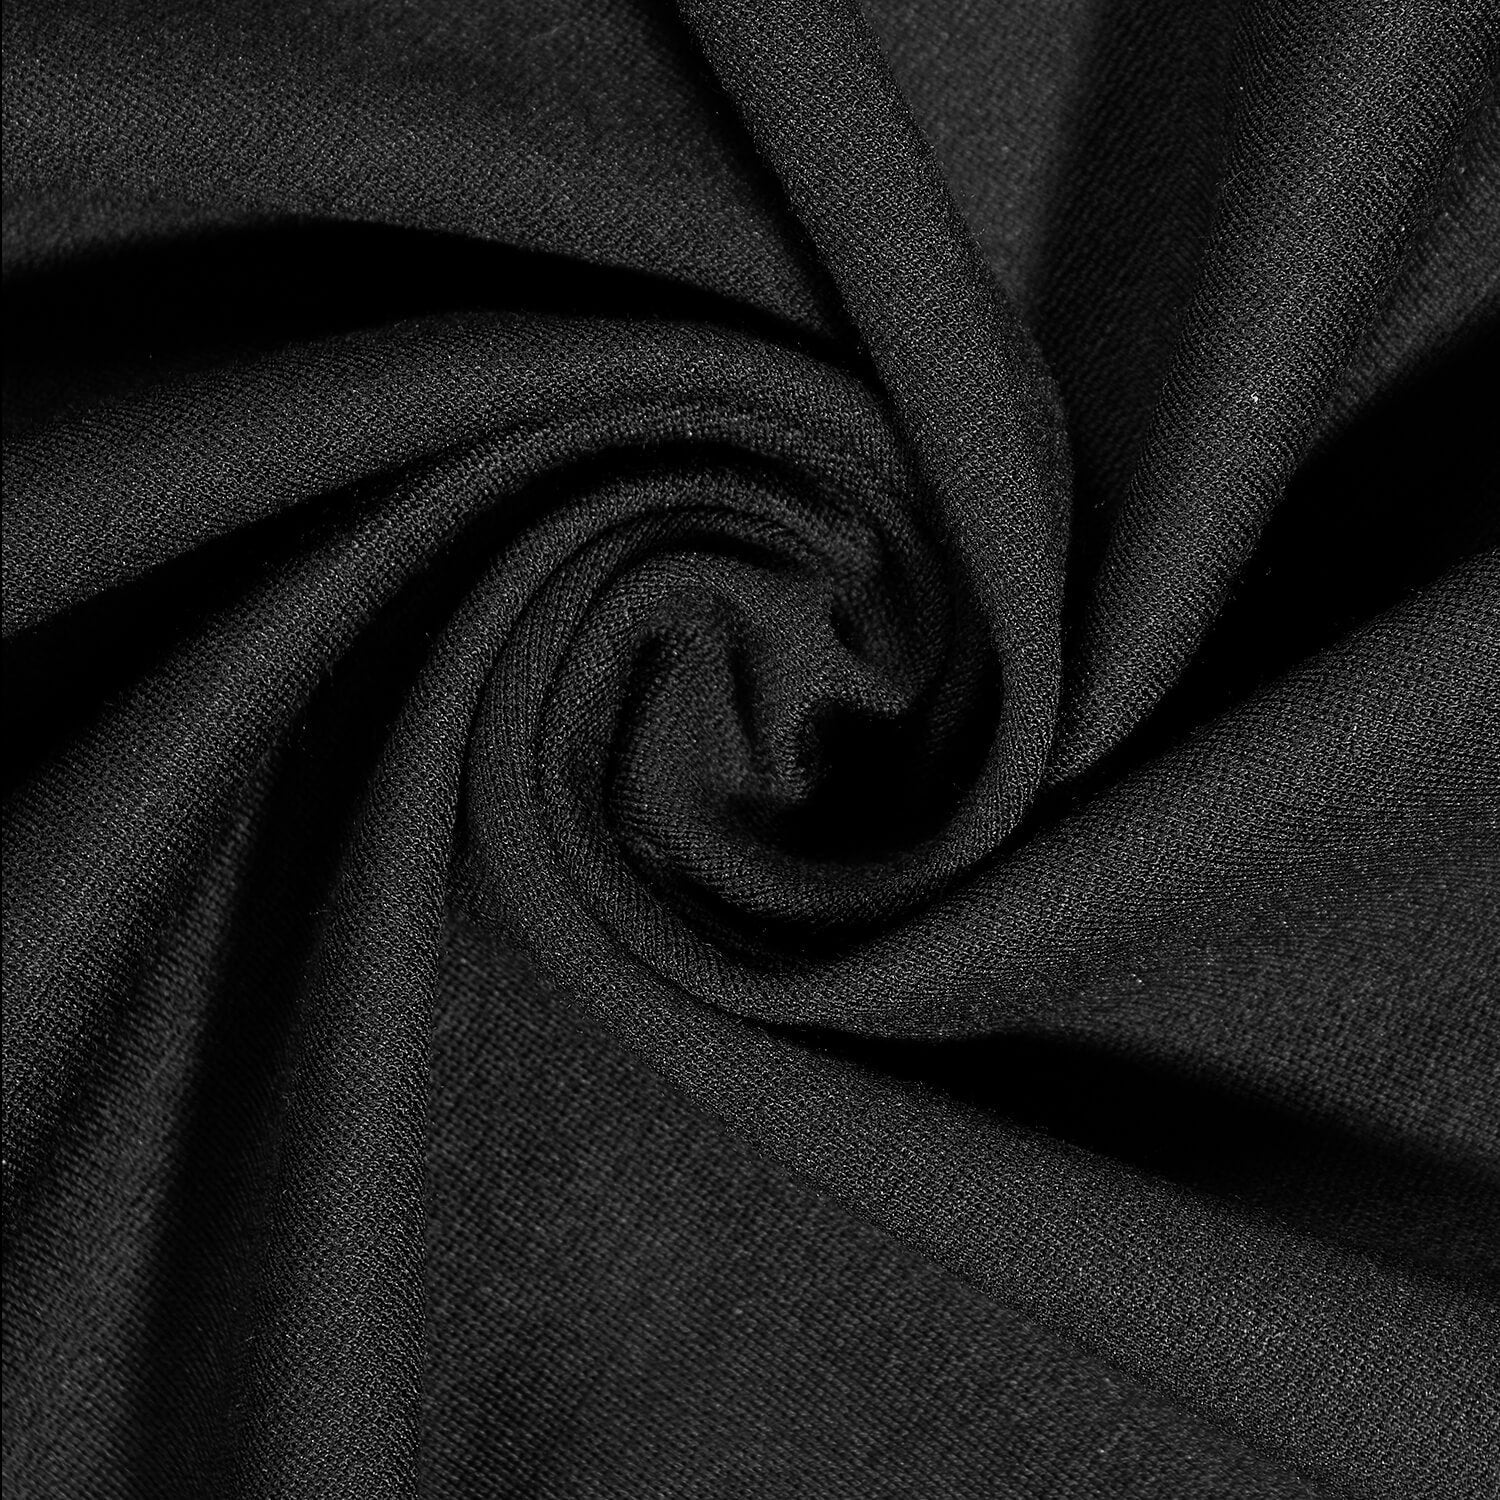 Black Heavyweight Rayon Spandex Jersey Knit Fabric